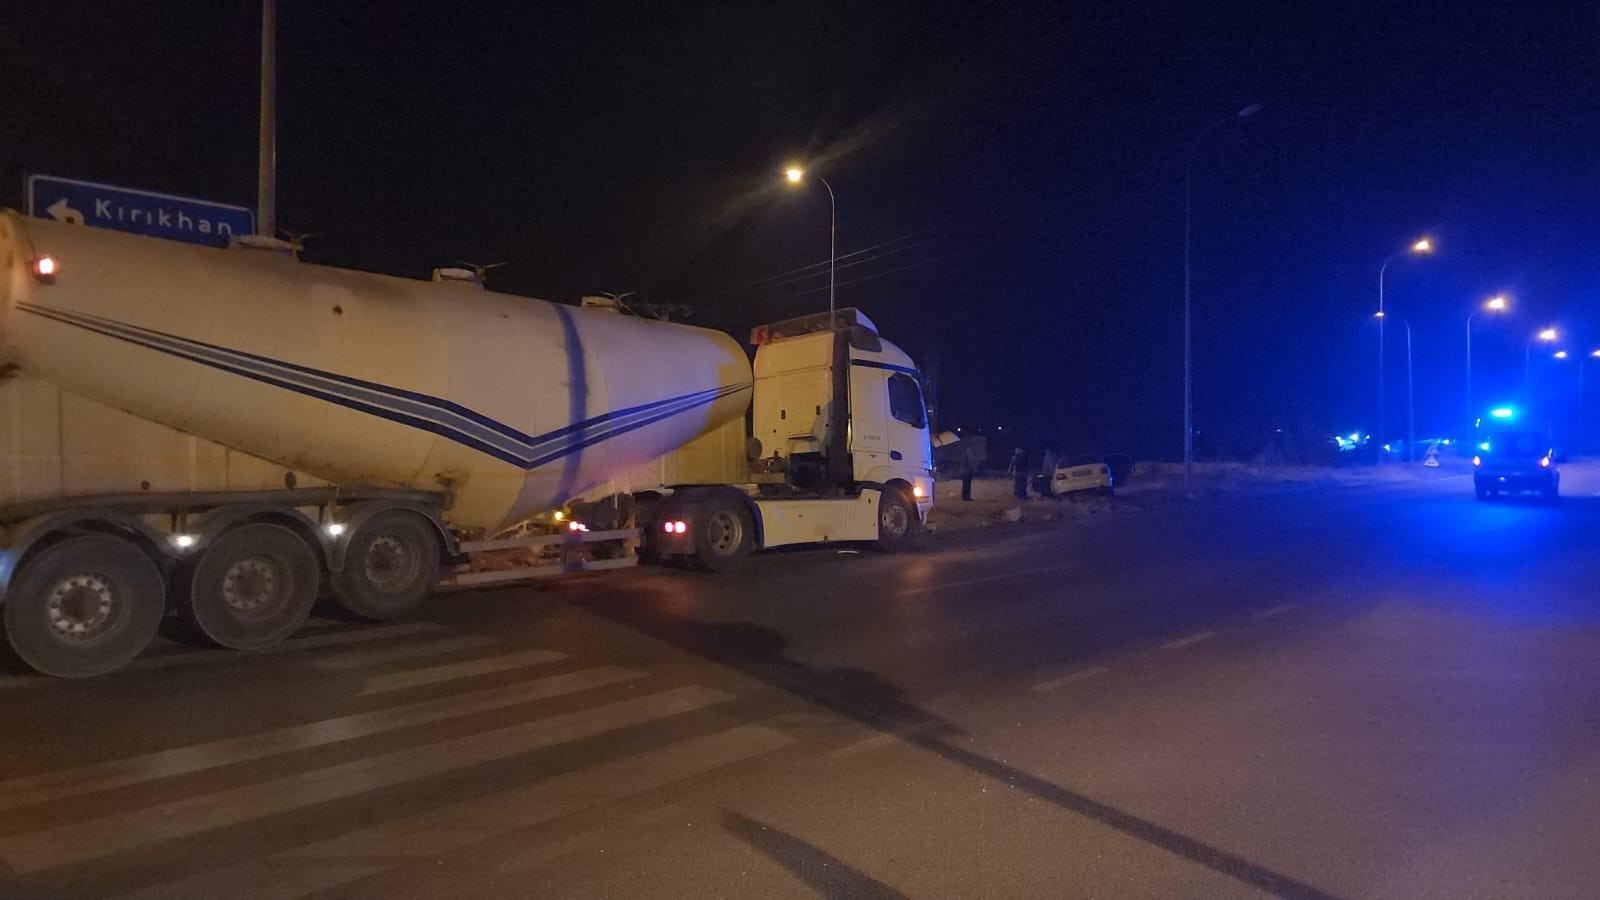 Hatay'ın Hassa ilçesinde, Hatay-Kilis yolunda gerçekleşen bir trafik kazasında, N.Y. tarafından kullanılan bir otomobil ile M.C. tarafından sürülen bir tanker aracı çarpıştı. 